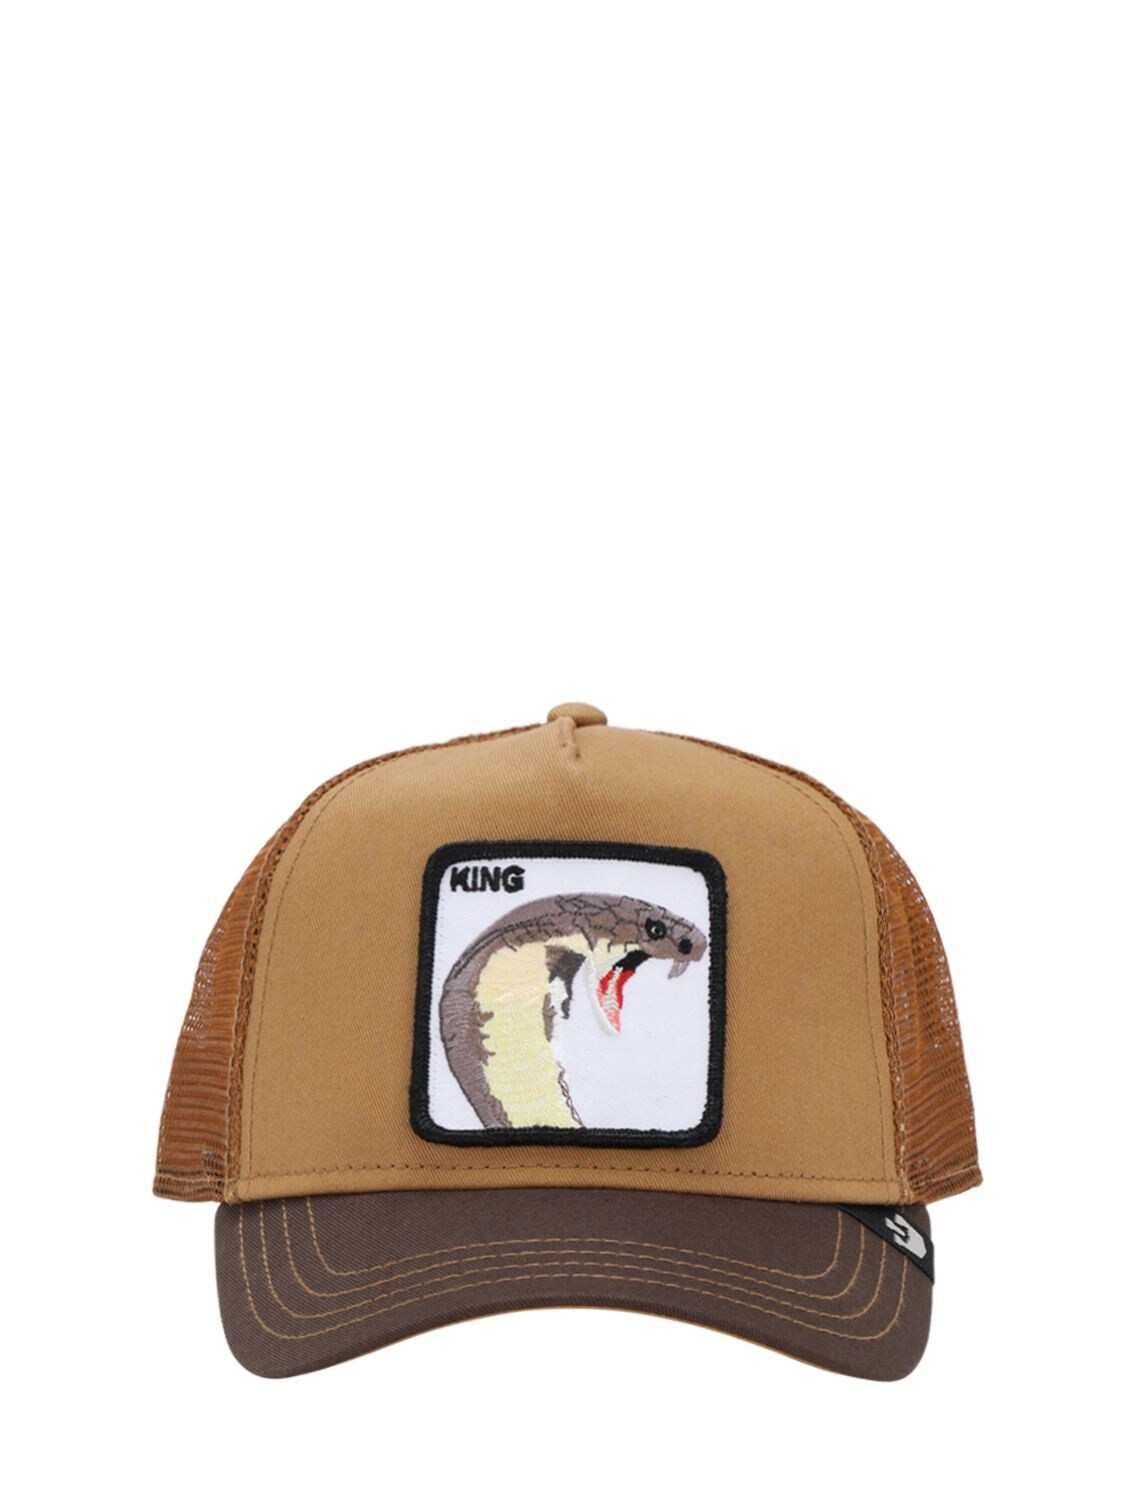 Goorin Bros Biter Trucker Hat In Brown